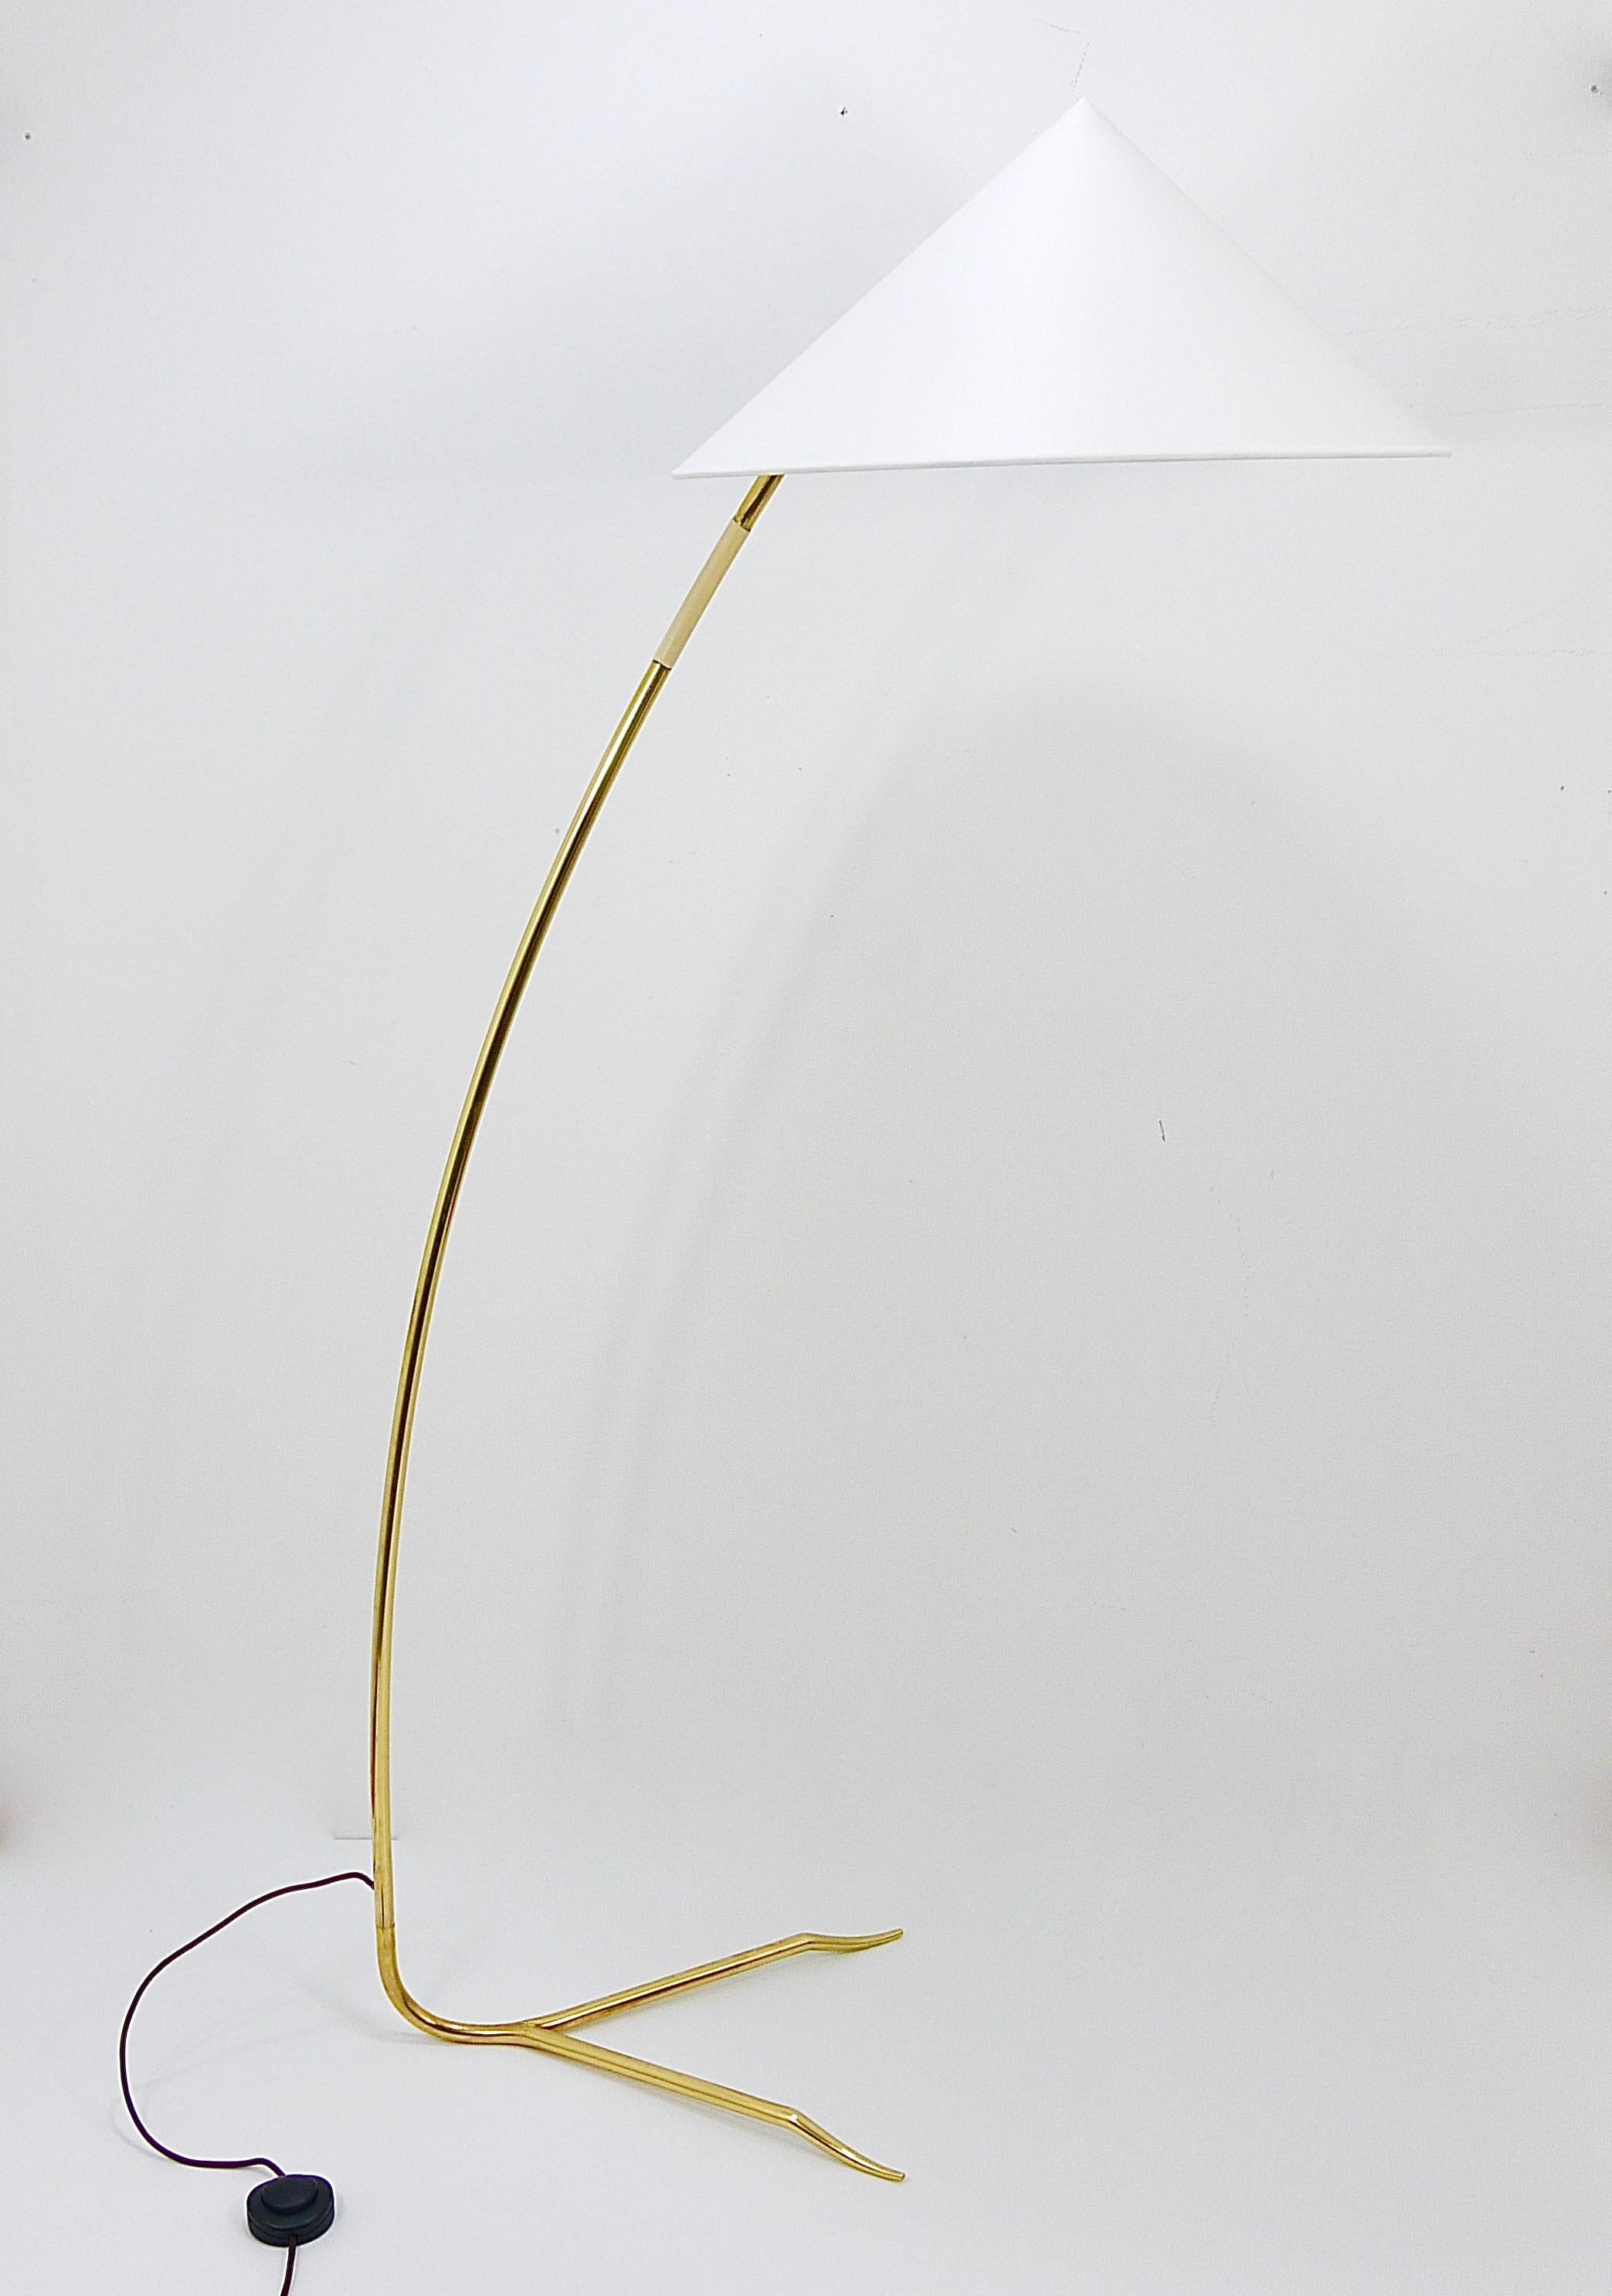 Un élégant et exquis lampadaire autrichien du milieu du siècle datant des années 1950, conçu et fabriqué par Rupert Nikoll Vienne. Cette belle pièce vintage présente une tige en laiton gracieusement courbée avec une poignée ivoire et une base en